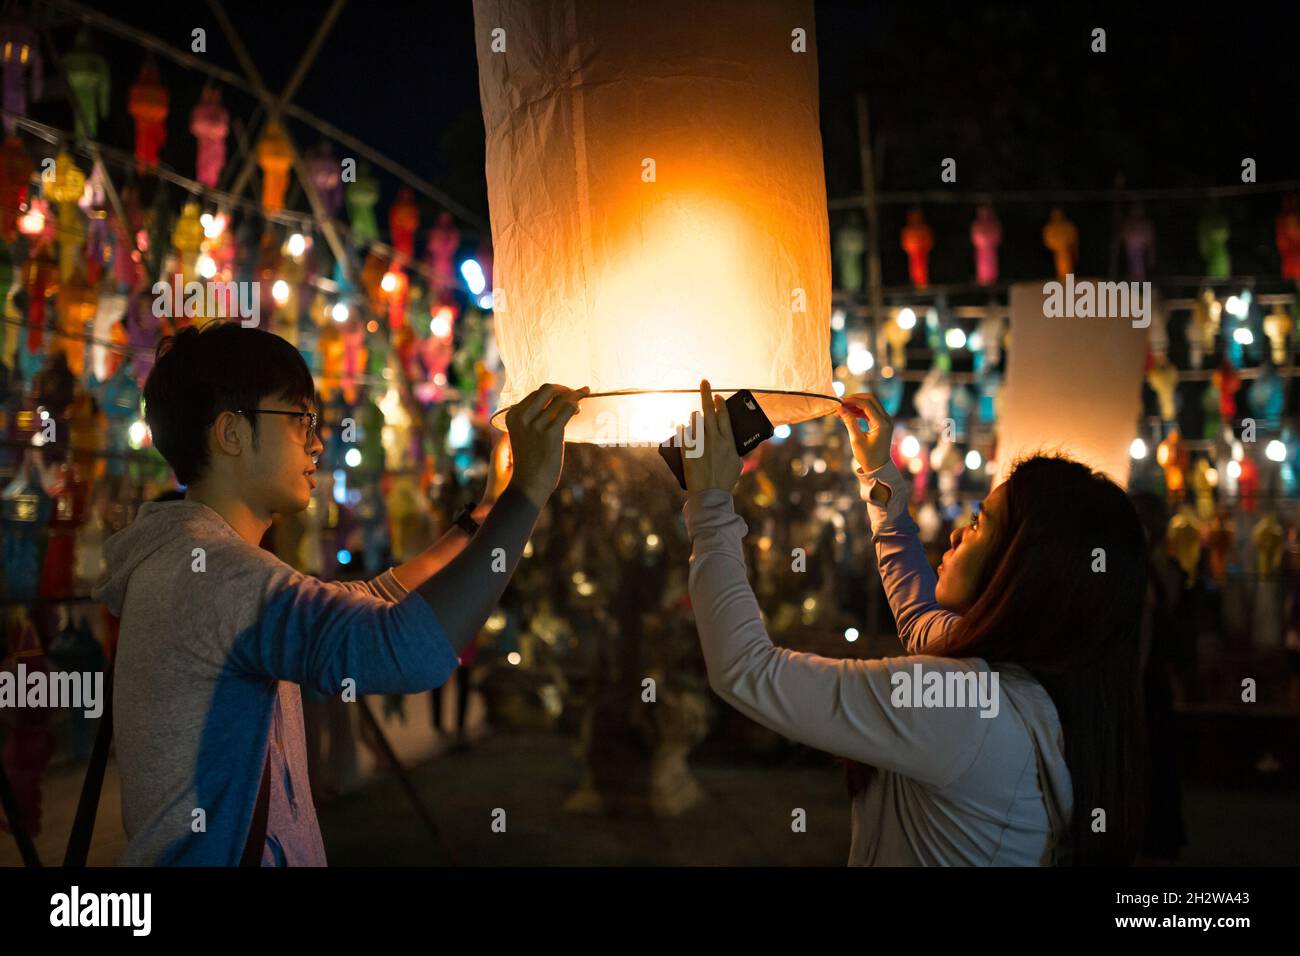 Chiang Mai, Thaïlande - 3 novembre 2017 : des personnes non identifiées ont incendié des lanternes pendant le festival Loy Krathong. Banque D'Images